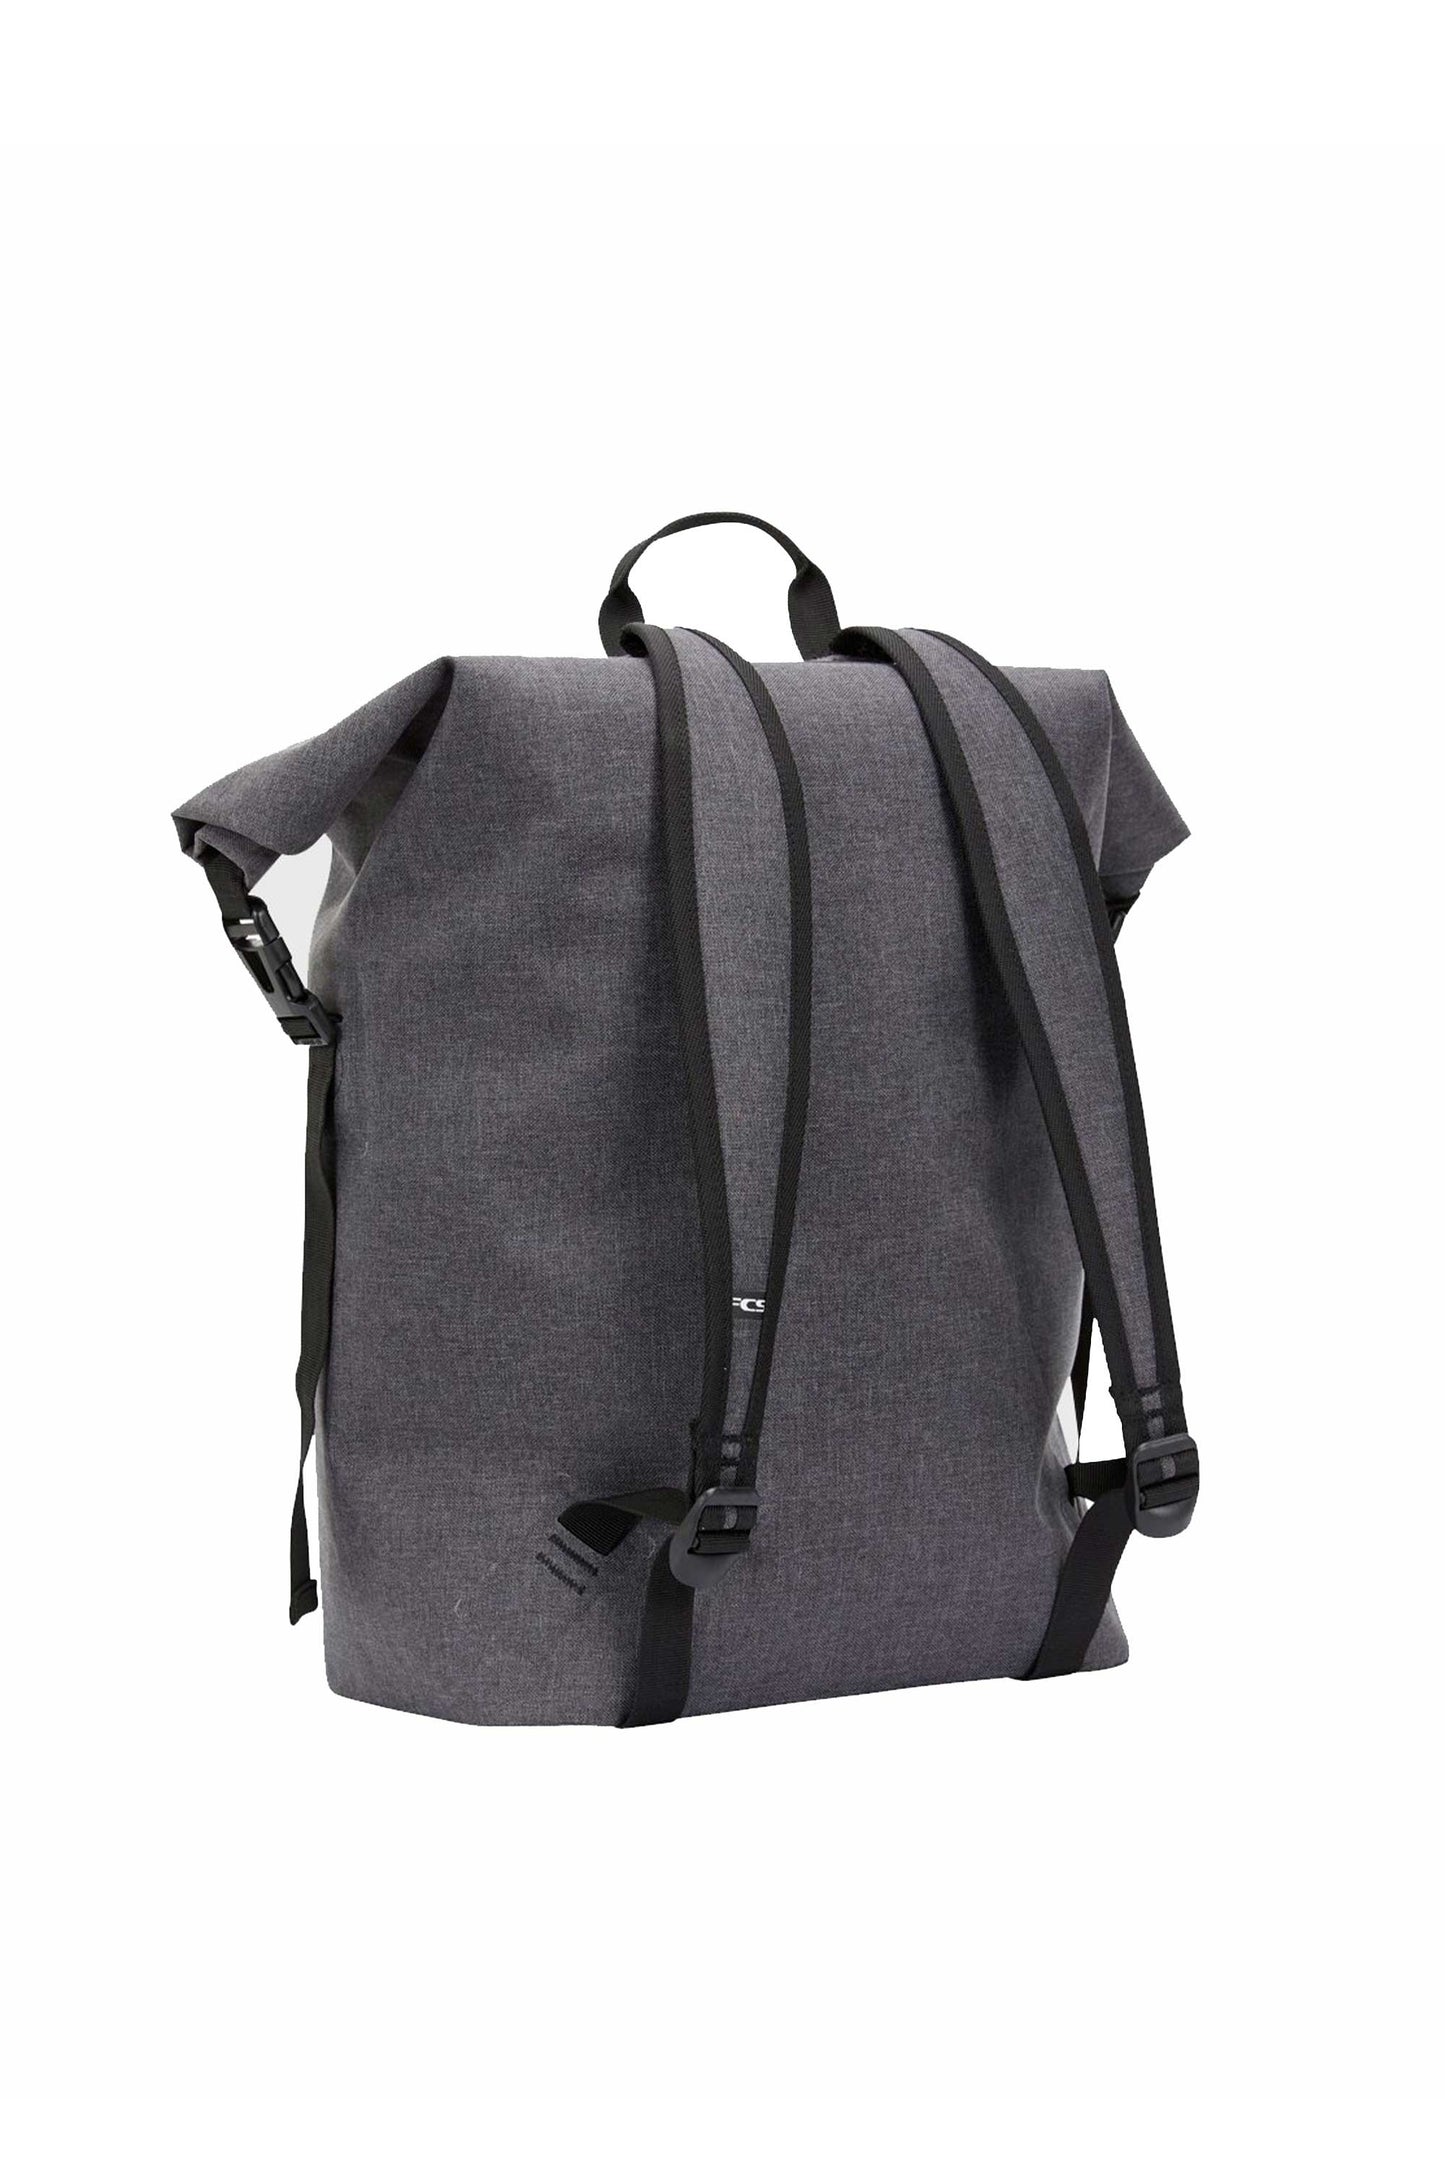 Pukas-Surf-Shop-FCS-backpack-wet-dry-pack